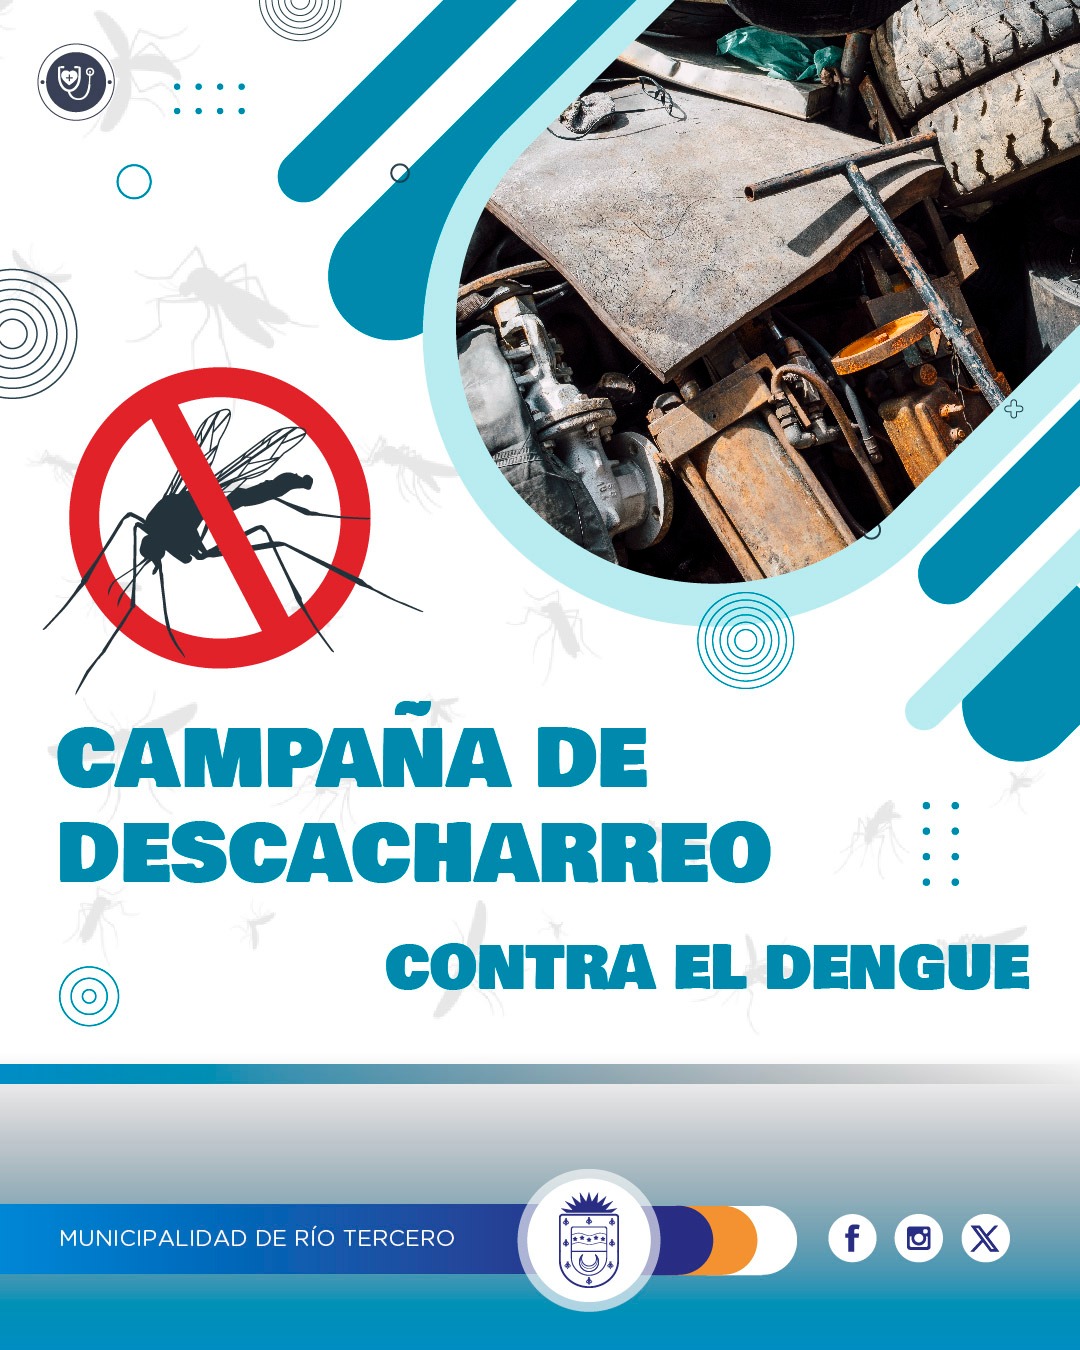 El municipio continúa con la campaña de descacharreo contra el dengue.